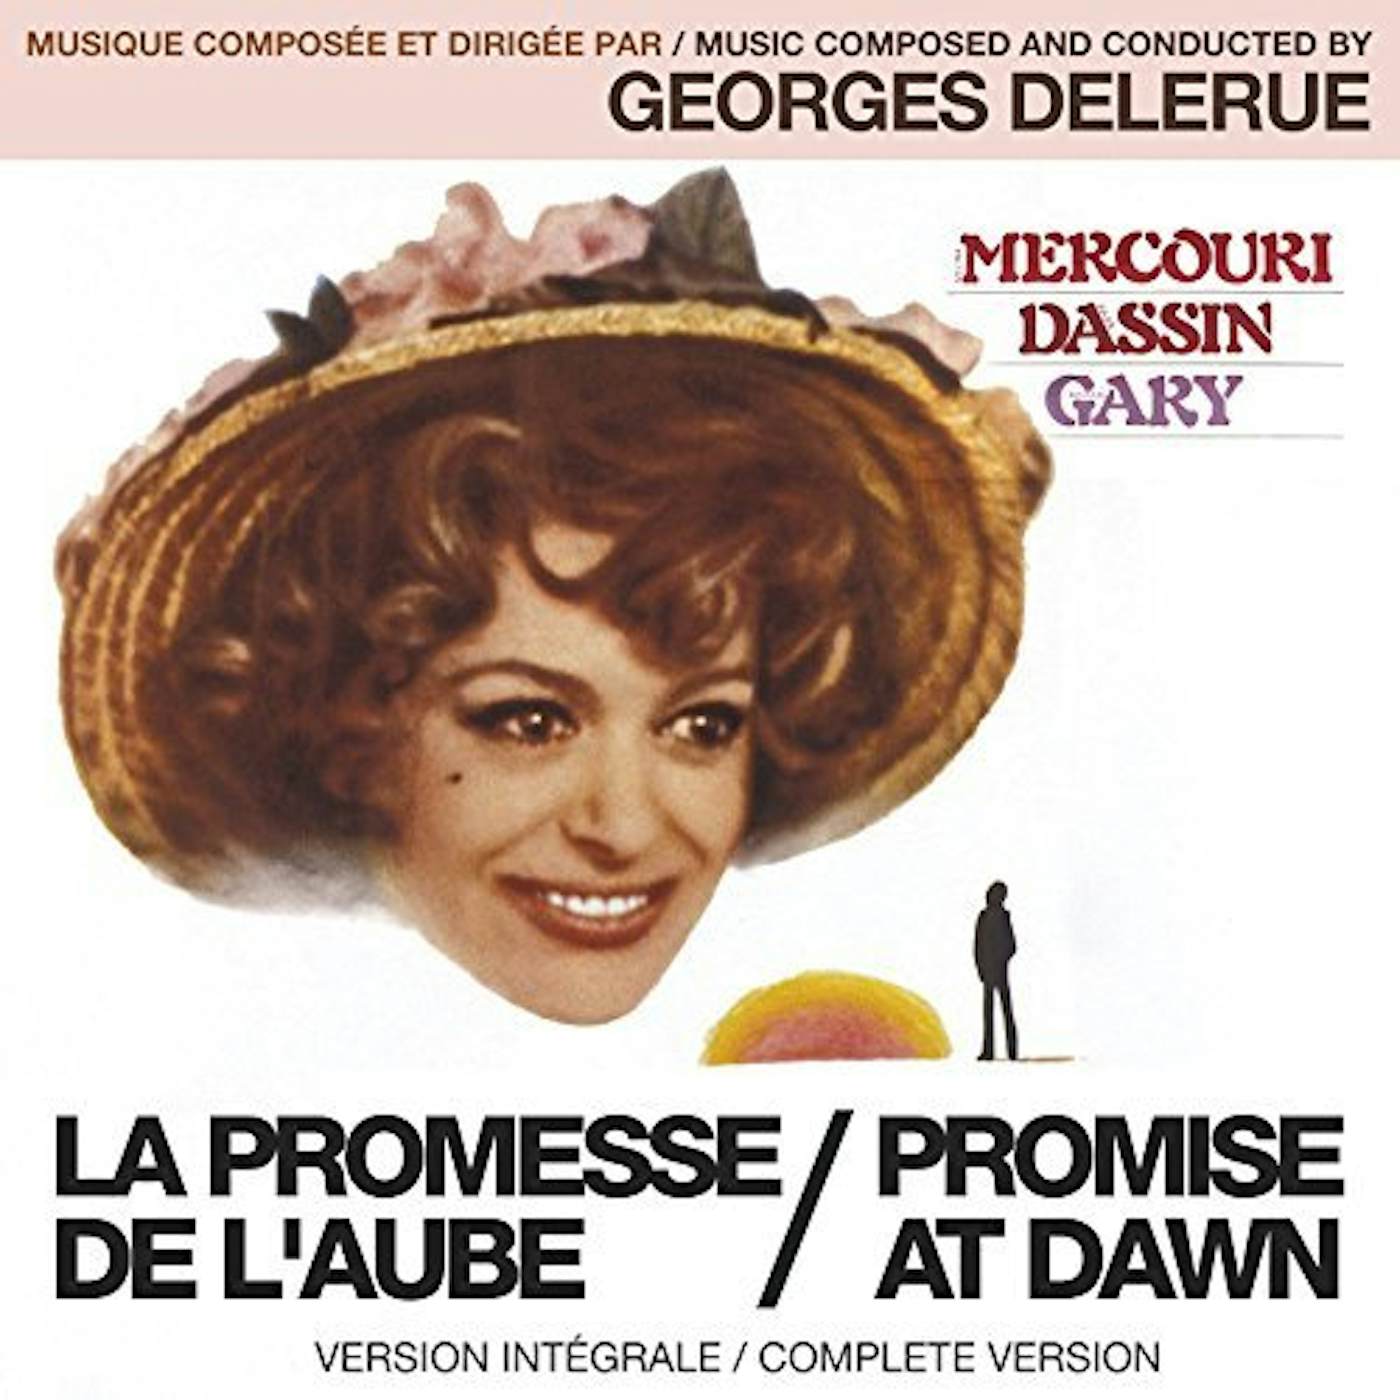 Georges Delerue LA PROMESSE DE L'AUBE / PROMISE AT DAWN CD